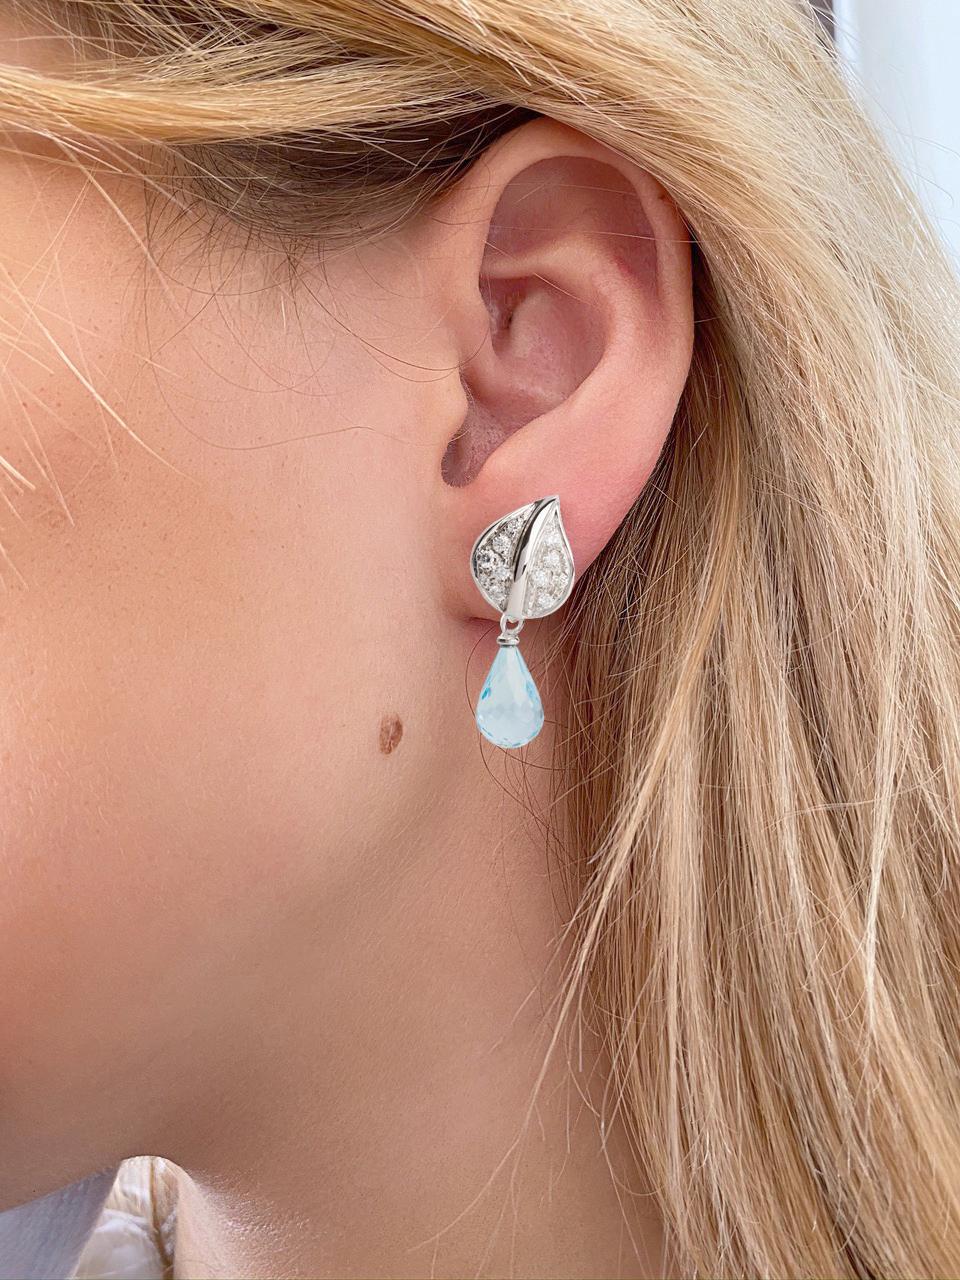 Collection Design/One présente de Rossella Ugolini  boucles d'oreilles modernes qui peuvent être portées avec ou sans pendentif.
Elles sont composées d'une feuille sertie de 0,30 diamant blanc qui repose sur le lobe et d'une aigue-marine 4 Karats